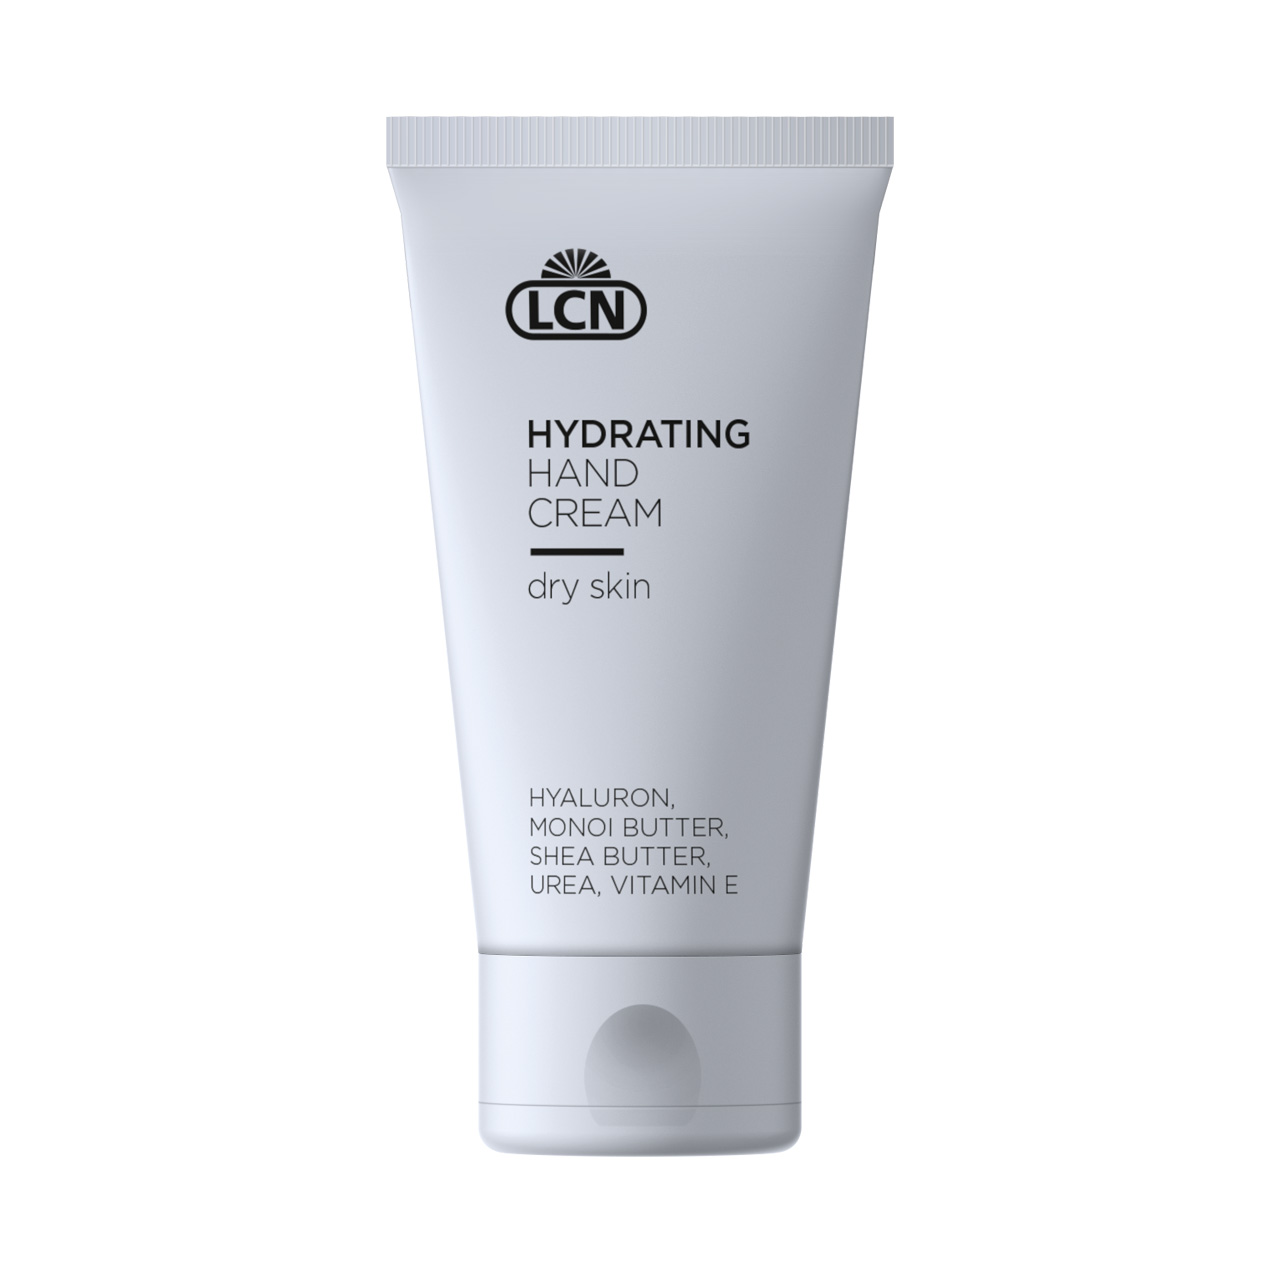 Hydrating Hand Cream, 50 ml dry skin